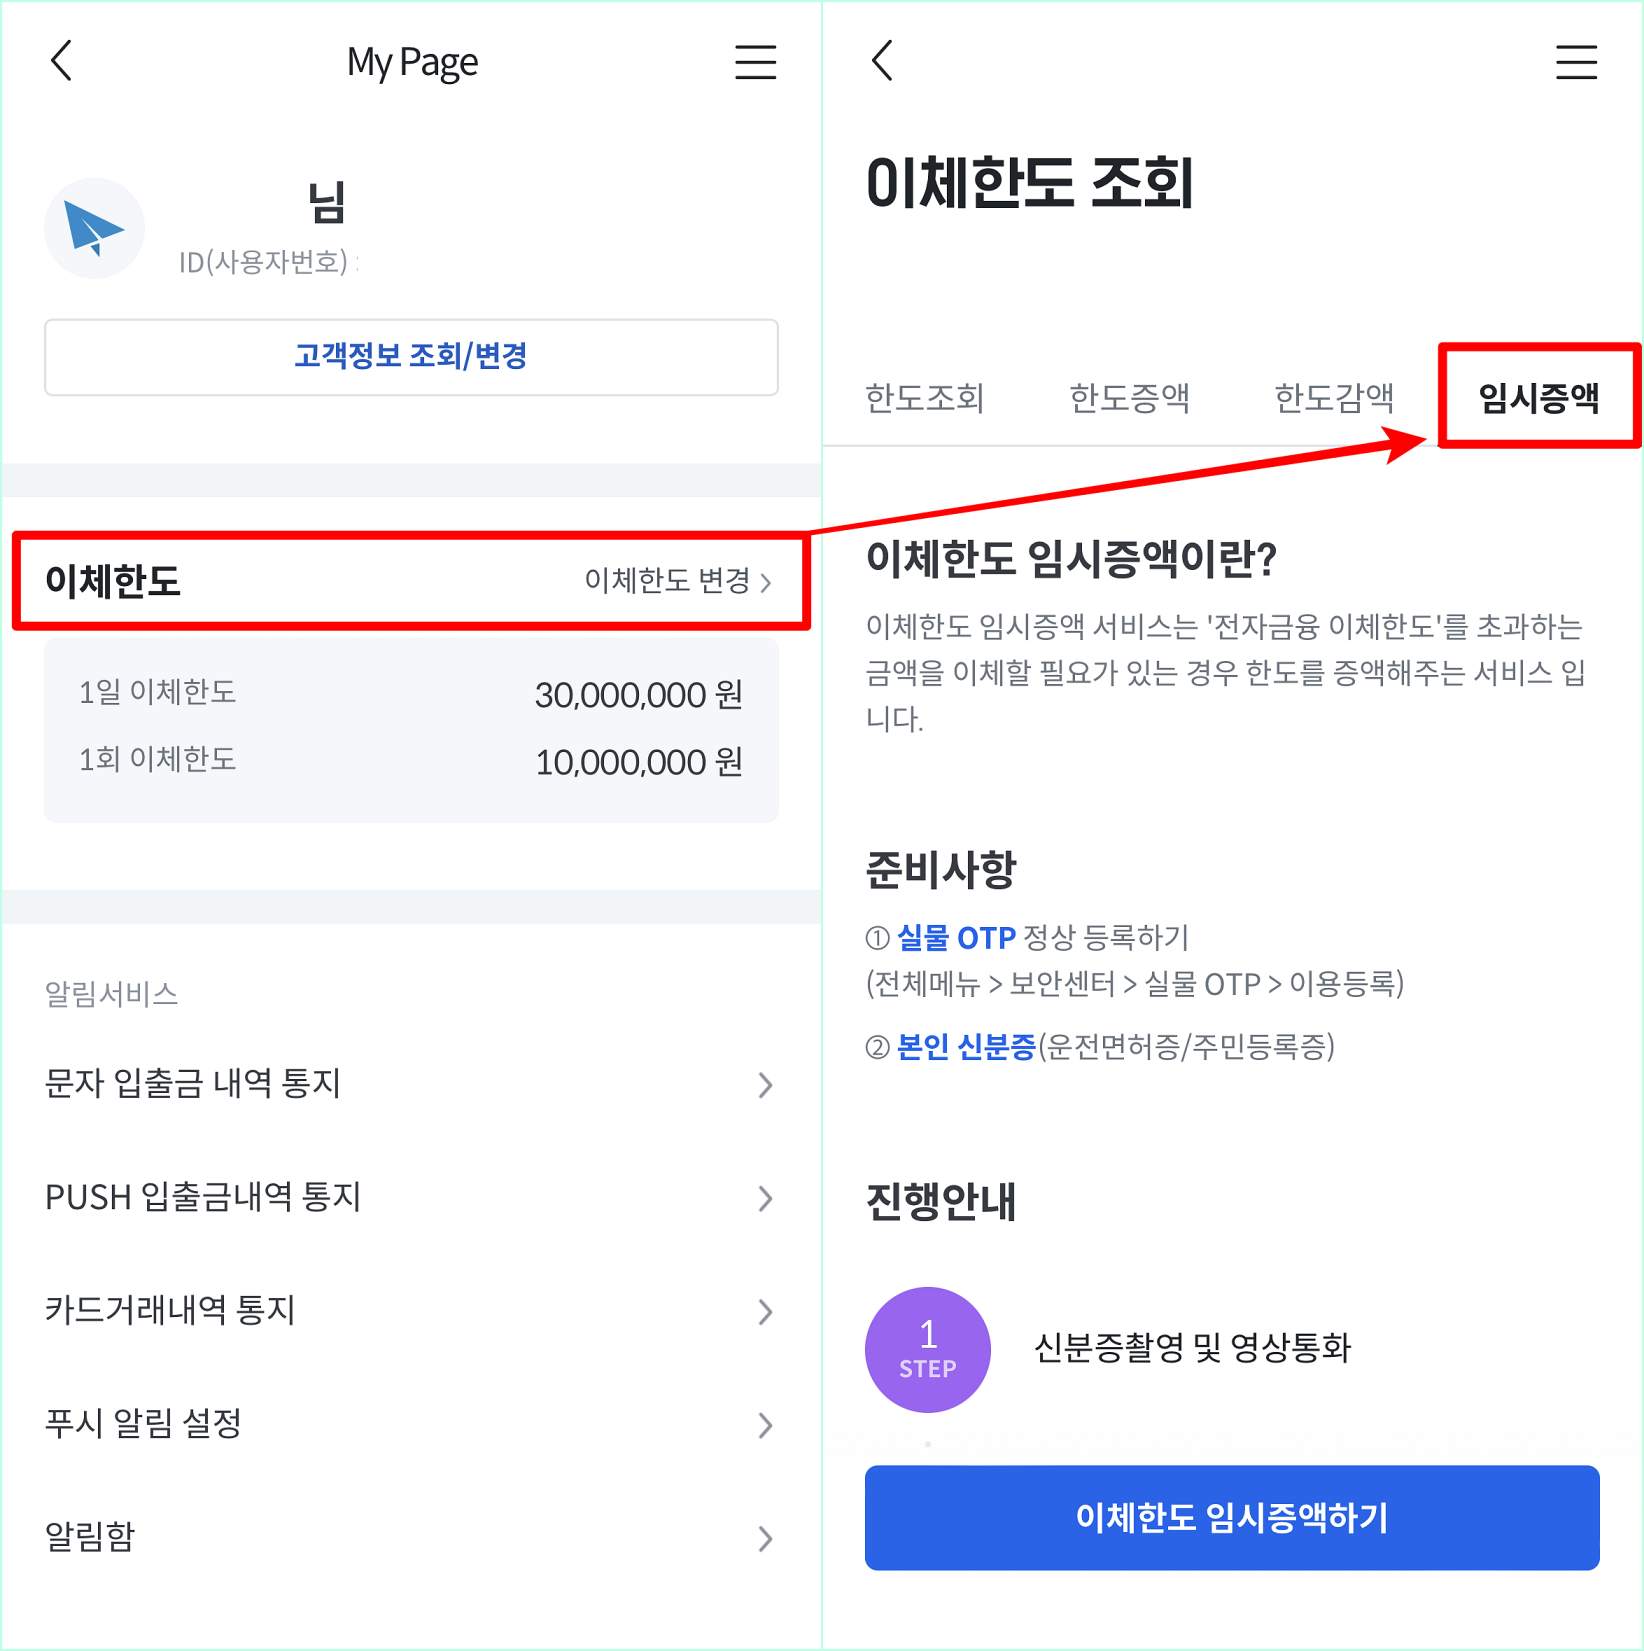 전북은행 JB뱅크의 My Page로 접속한 뒤&#44; 이체한도를 선택하고&#44; 임시증액을 선택